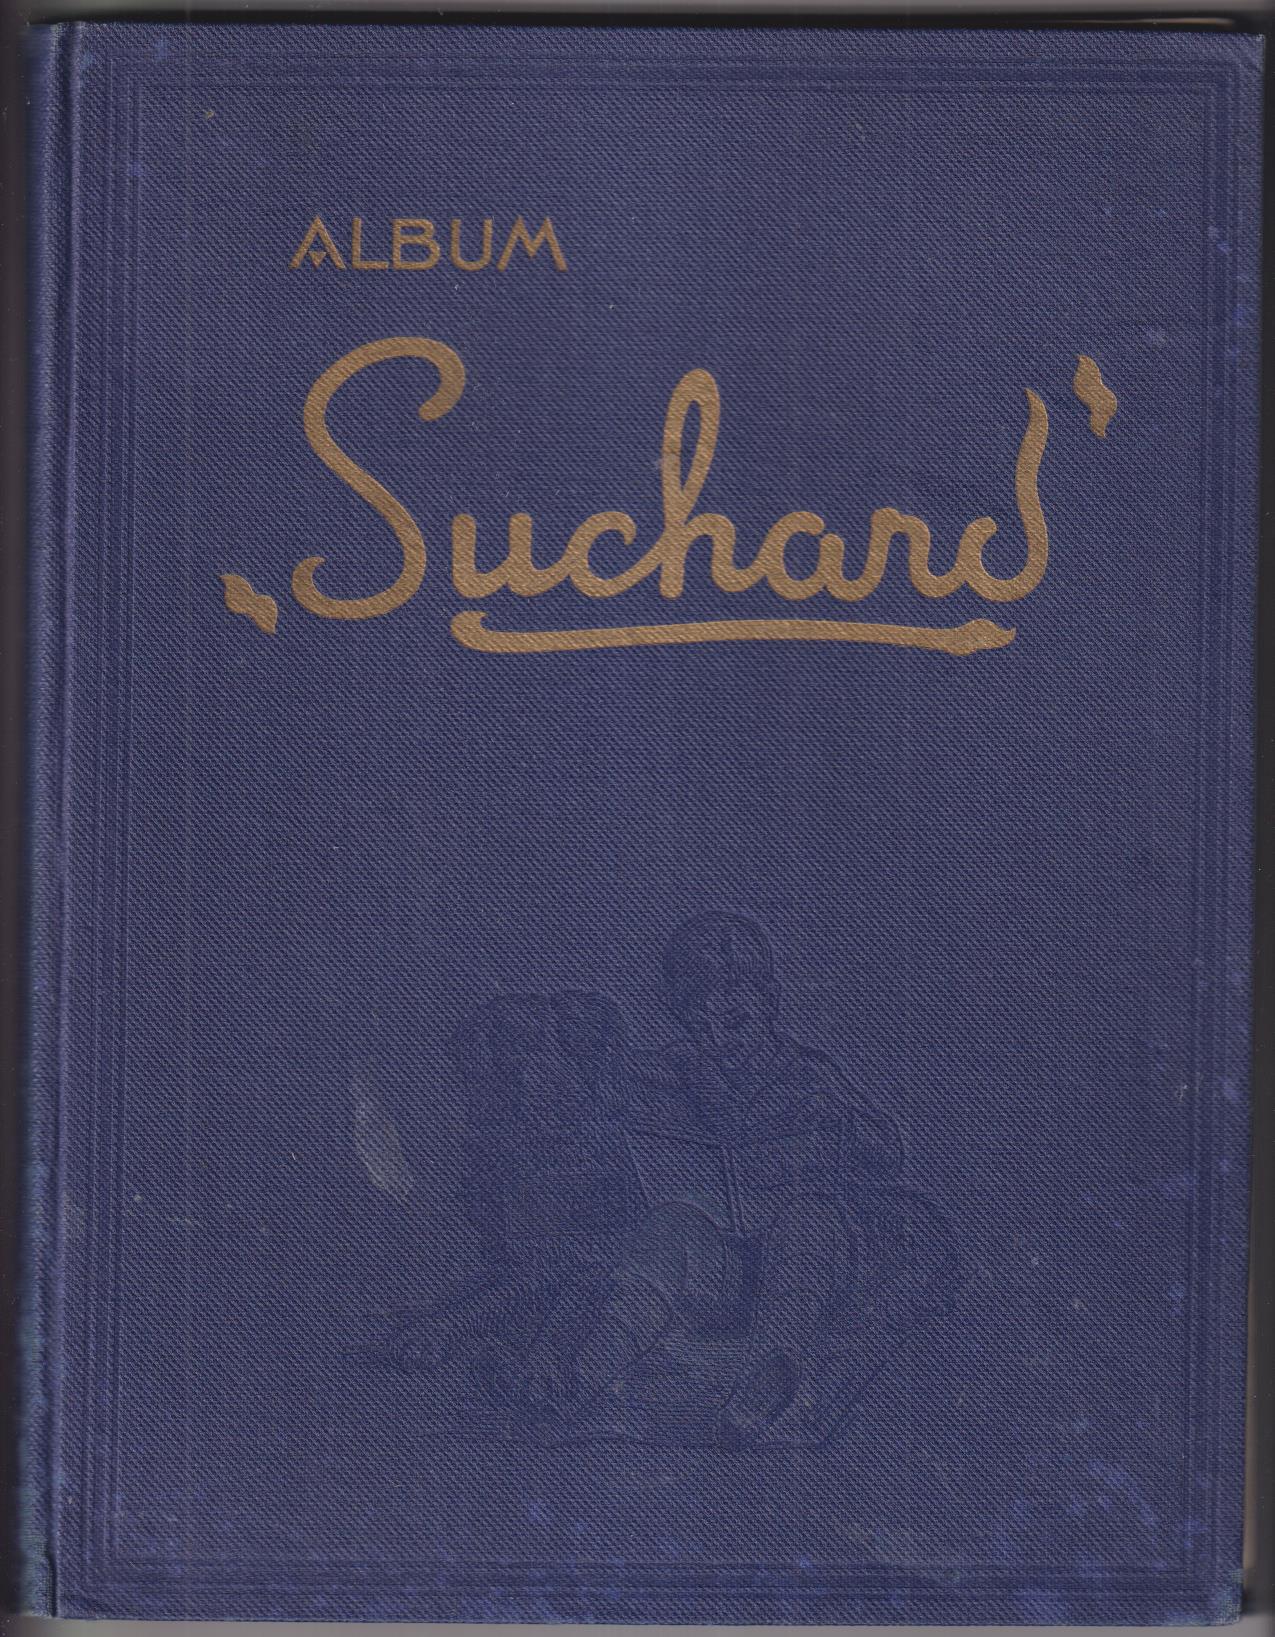 Álbum de Chocolates Suchard. 1930. Contiene 535 cromos (Bueno, centrados y bien pegados)